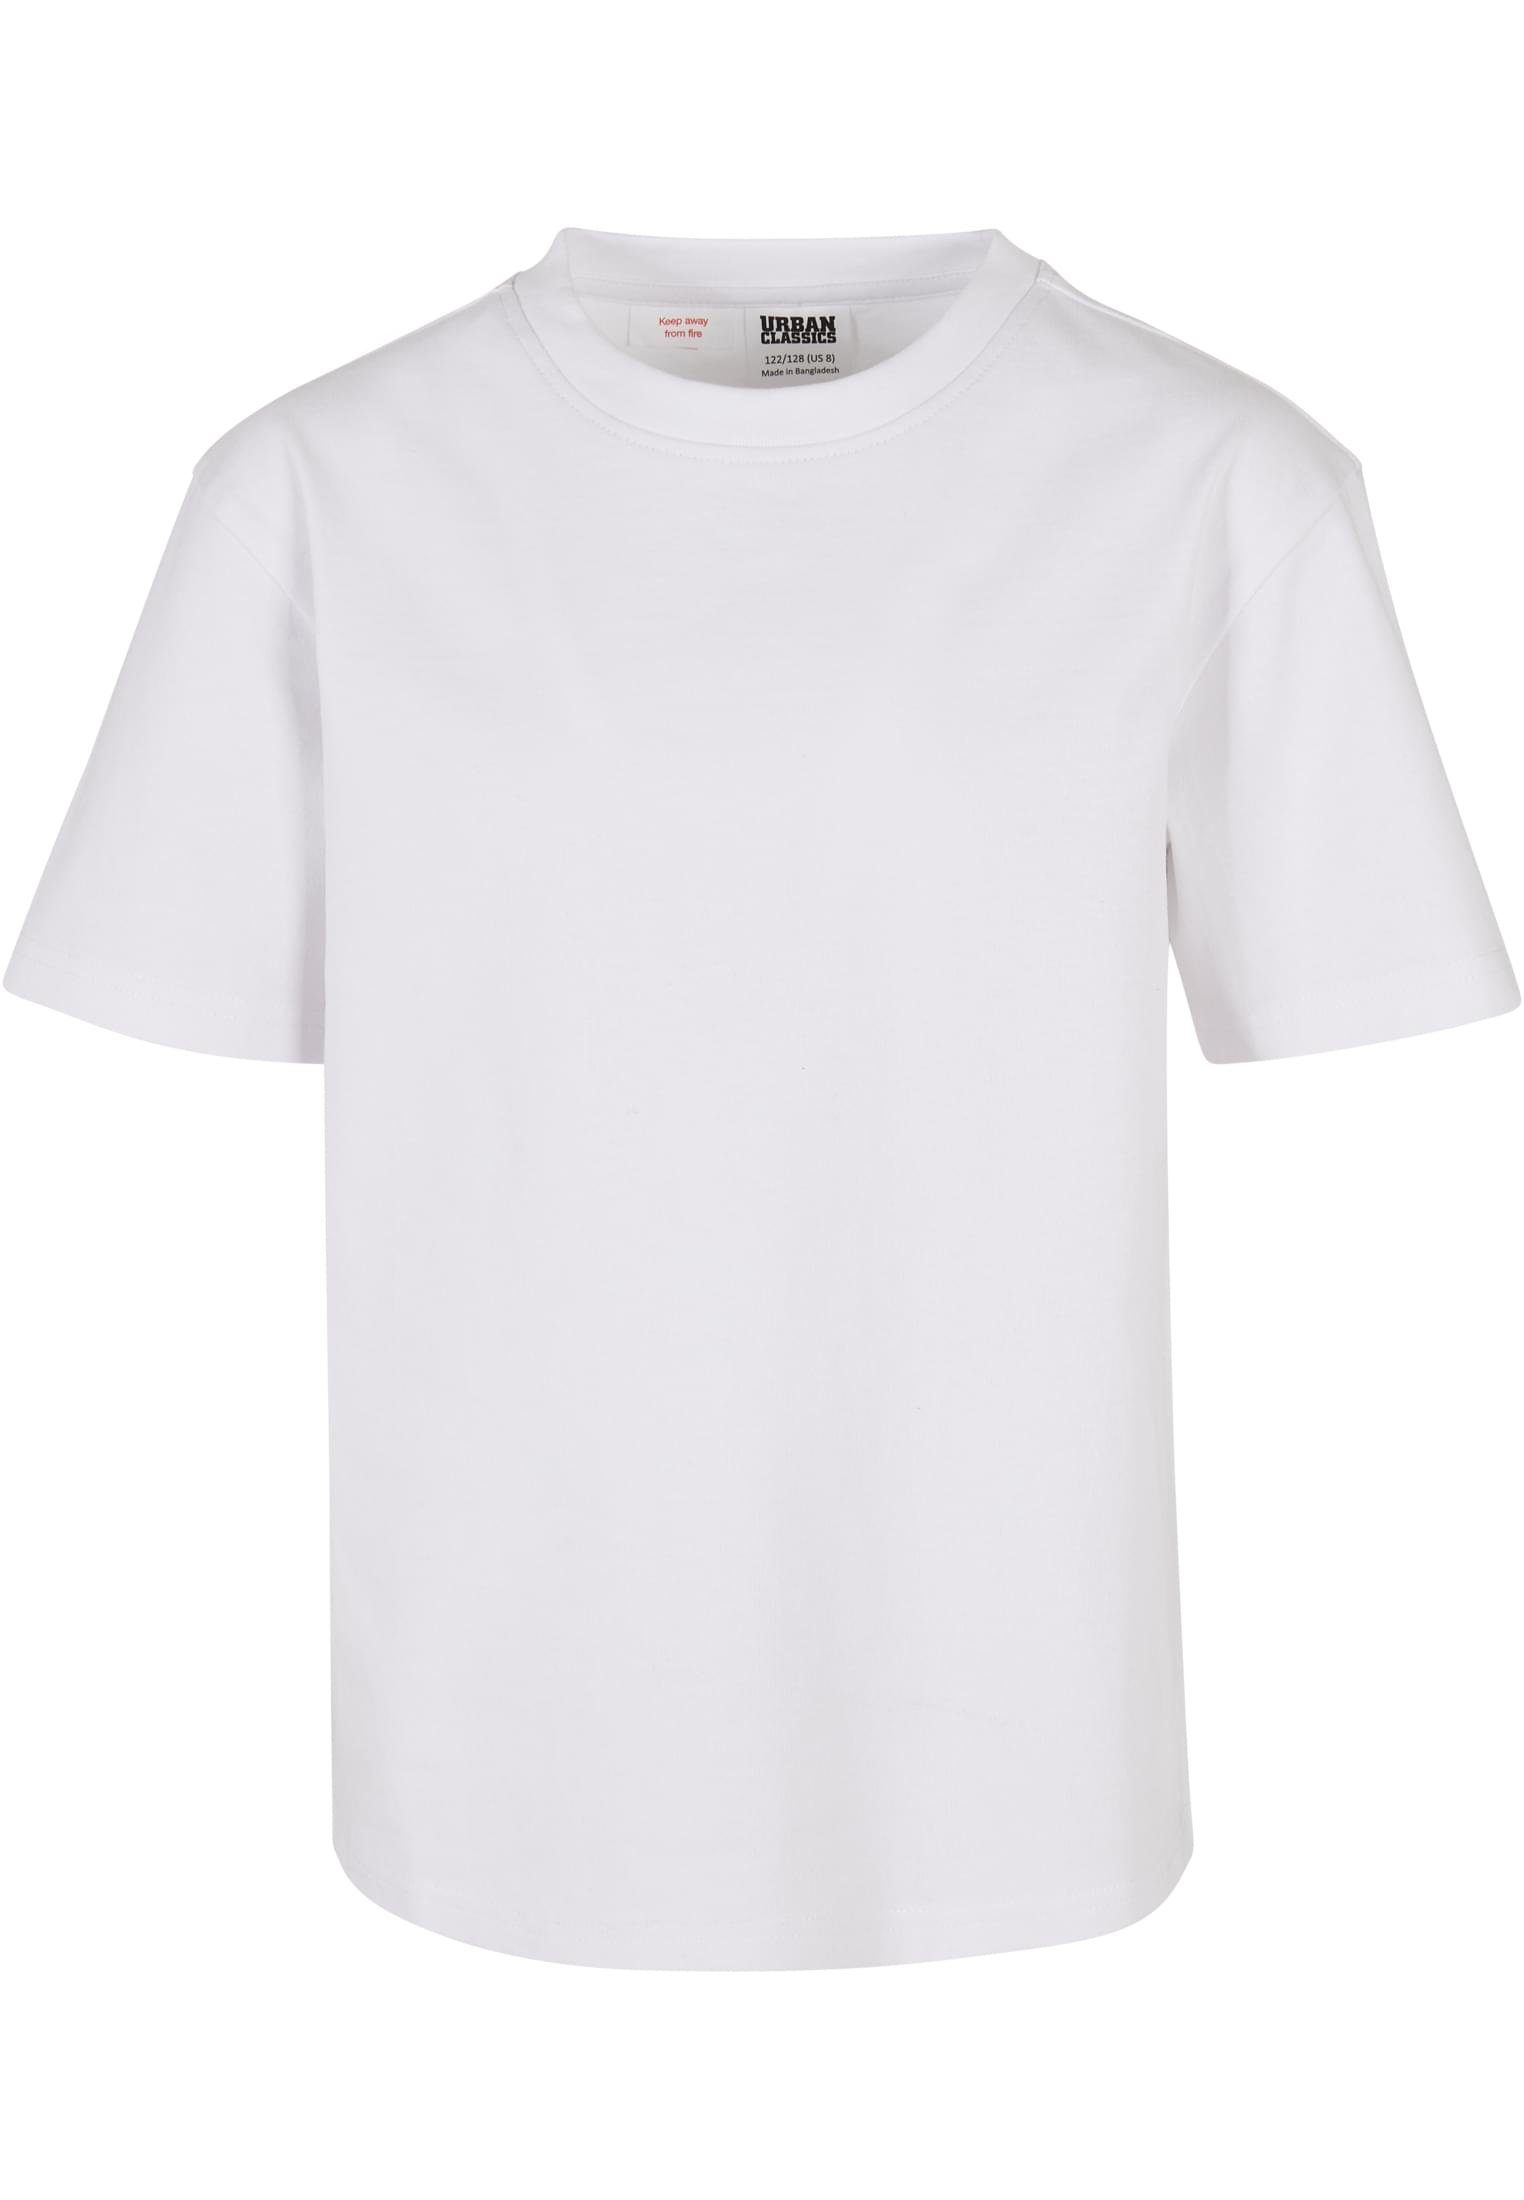 Weiße Jungen T-Shirts online kaufen | OTTO | T-Shirts